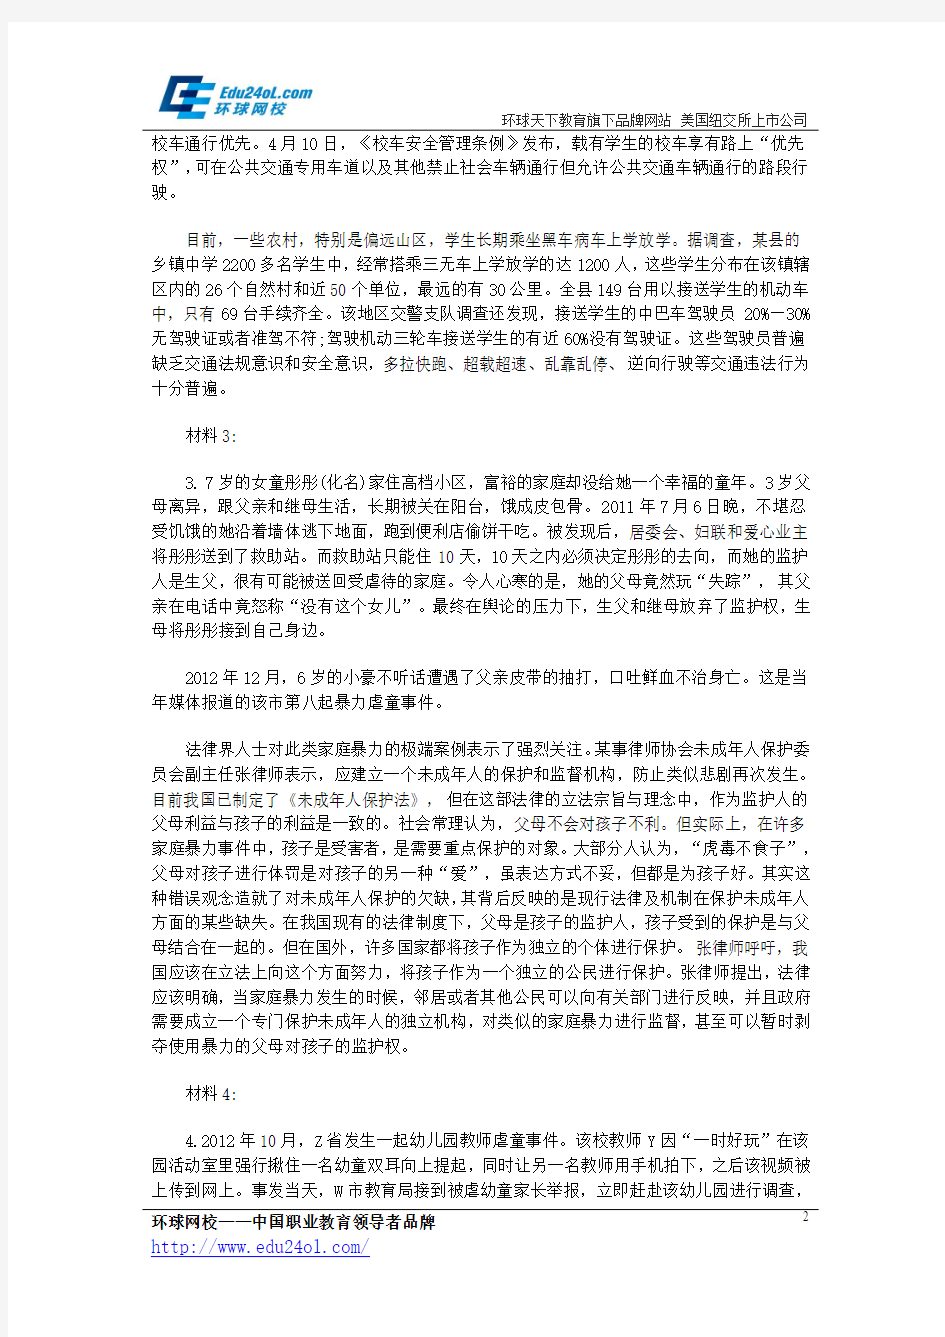 2014年黑龙江省公务员考试申论真题及答案